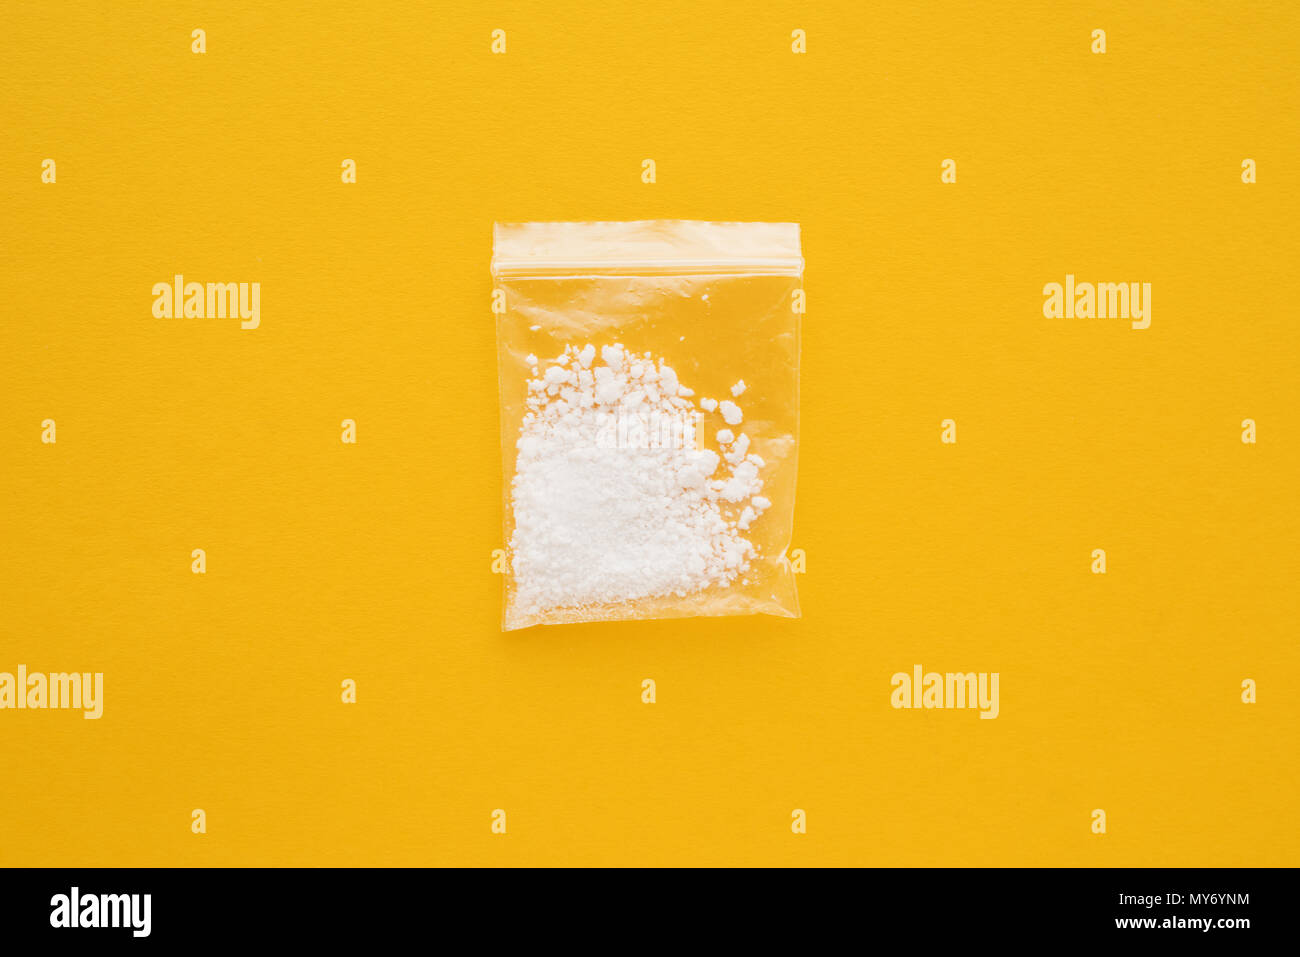 La cocaina farmaco nel sacchetto risigillabile luminoso su sfondo giallo Foto Stock